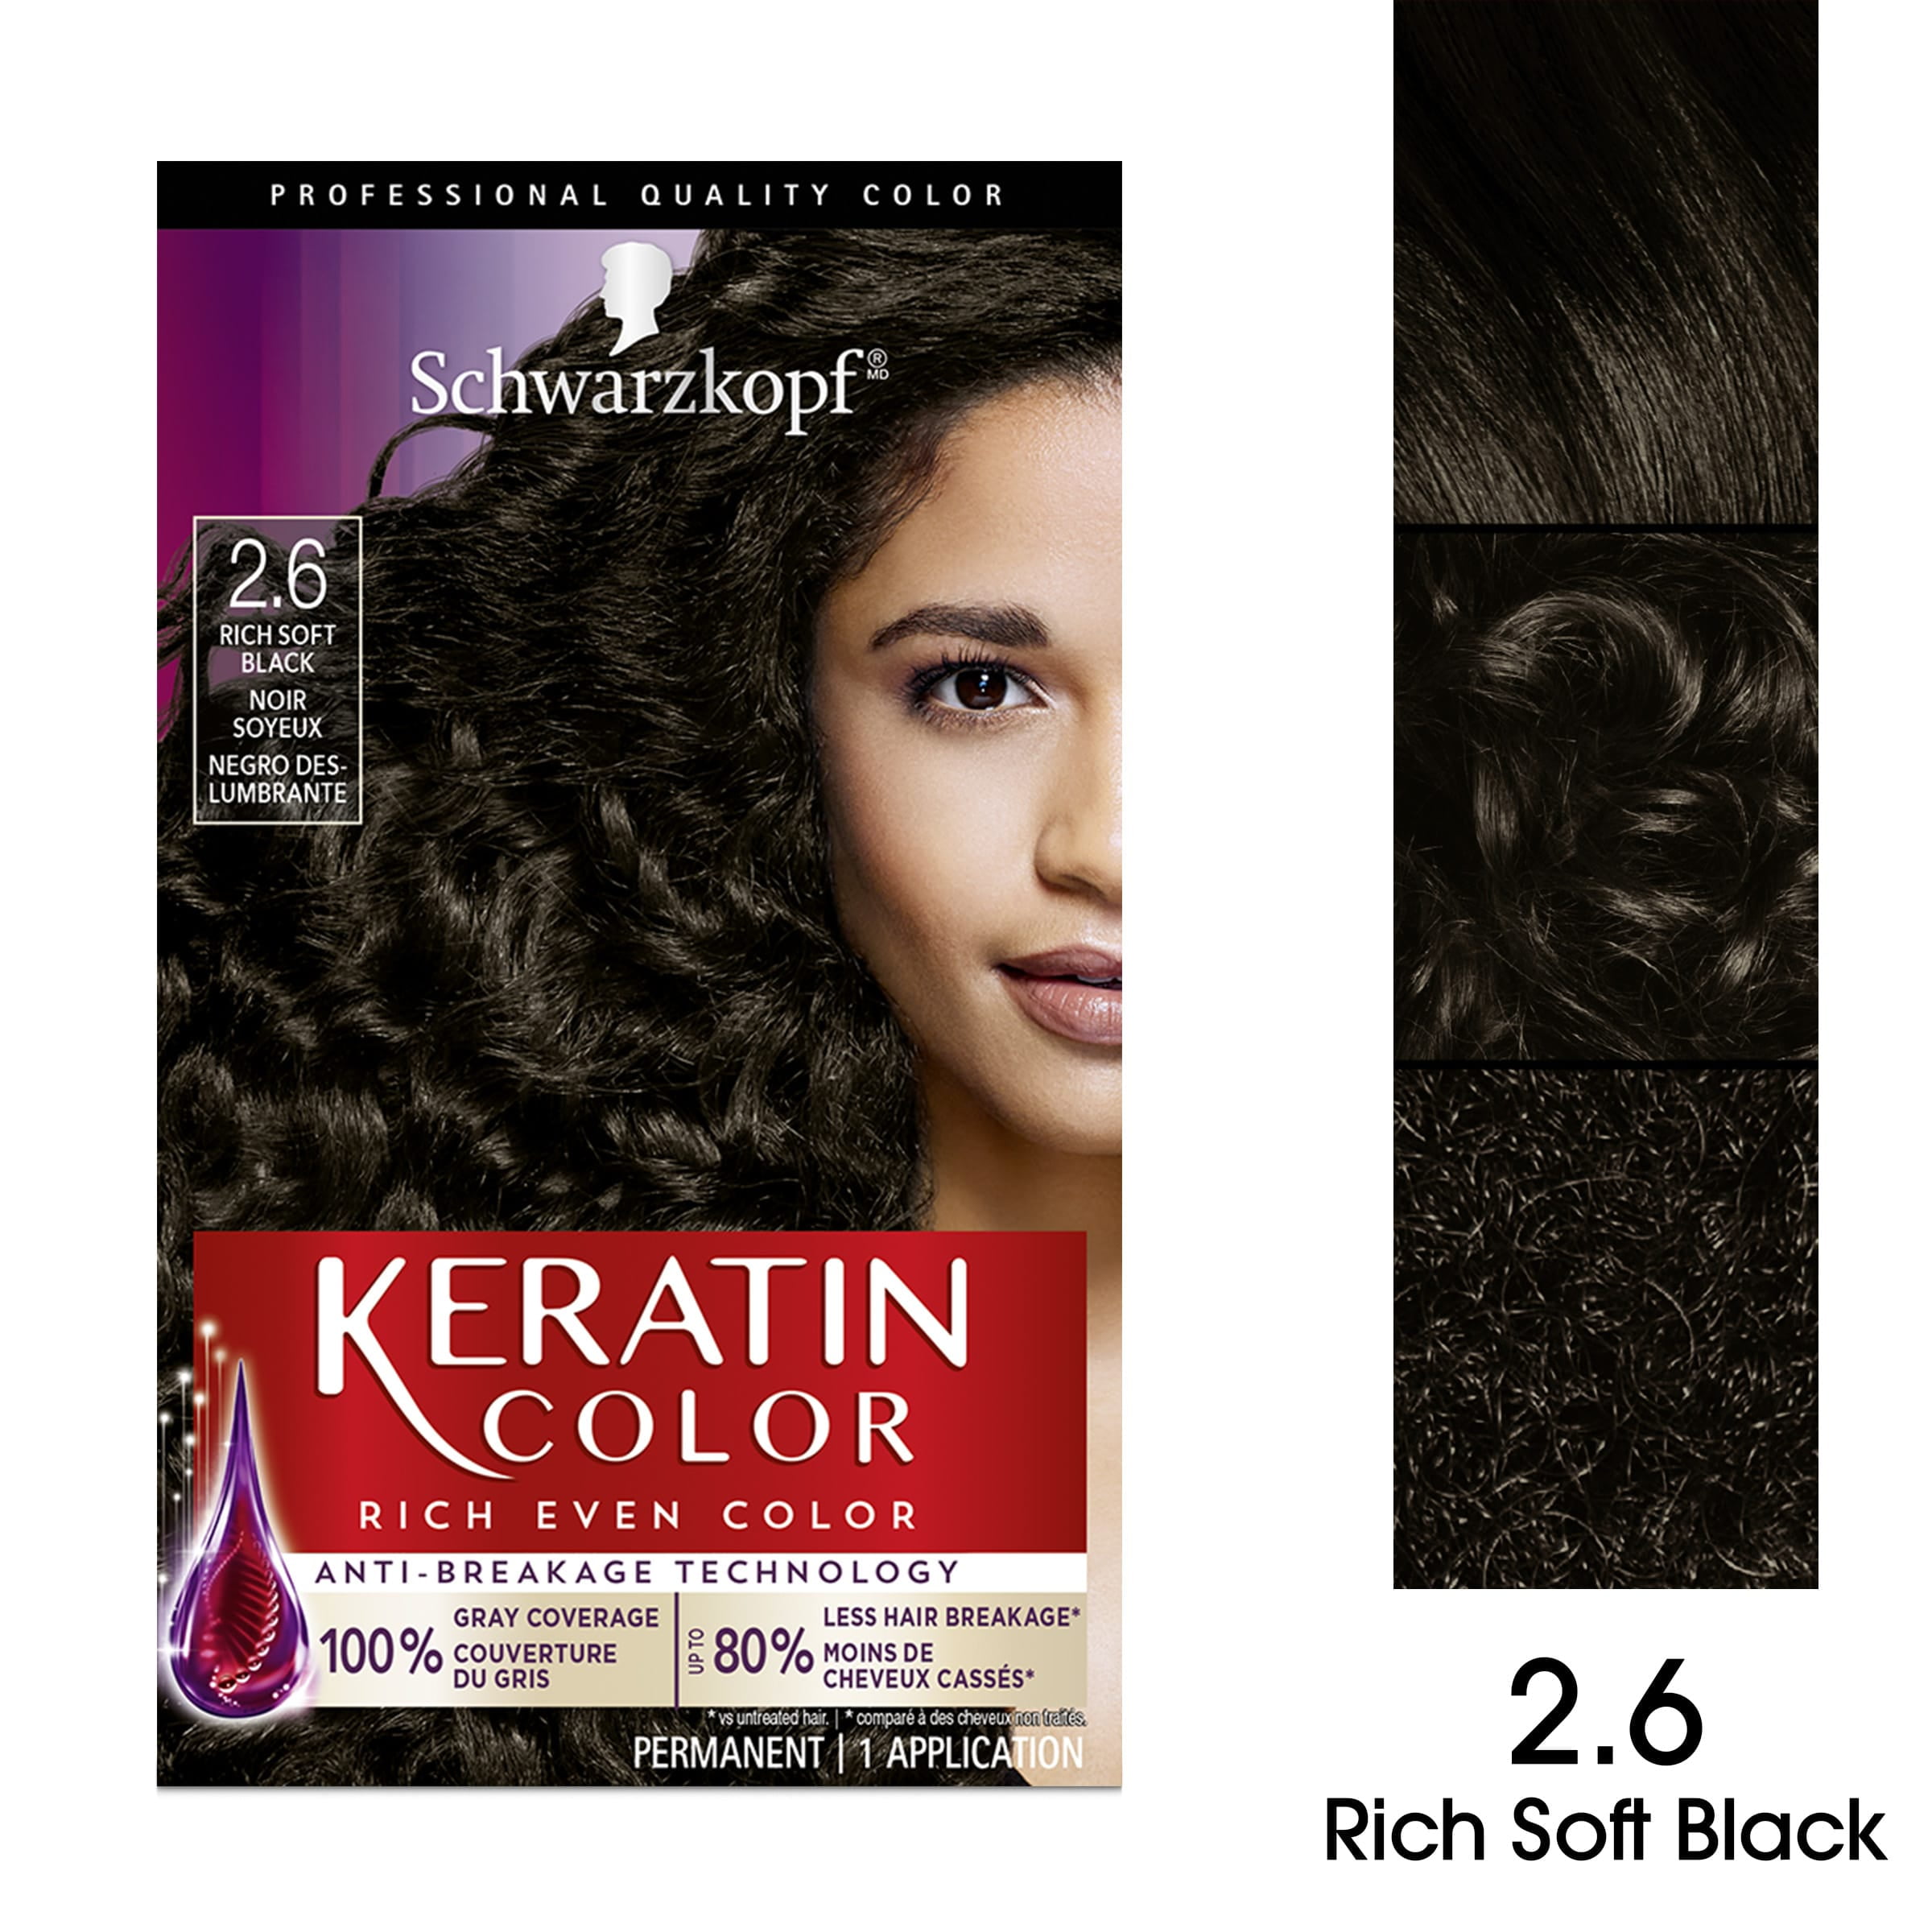 Schwarzkopf Keratin Color Permanent Hair Color Cream, 2.6 Rich Black